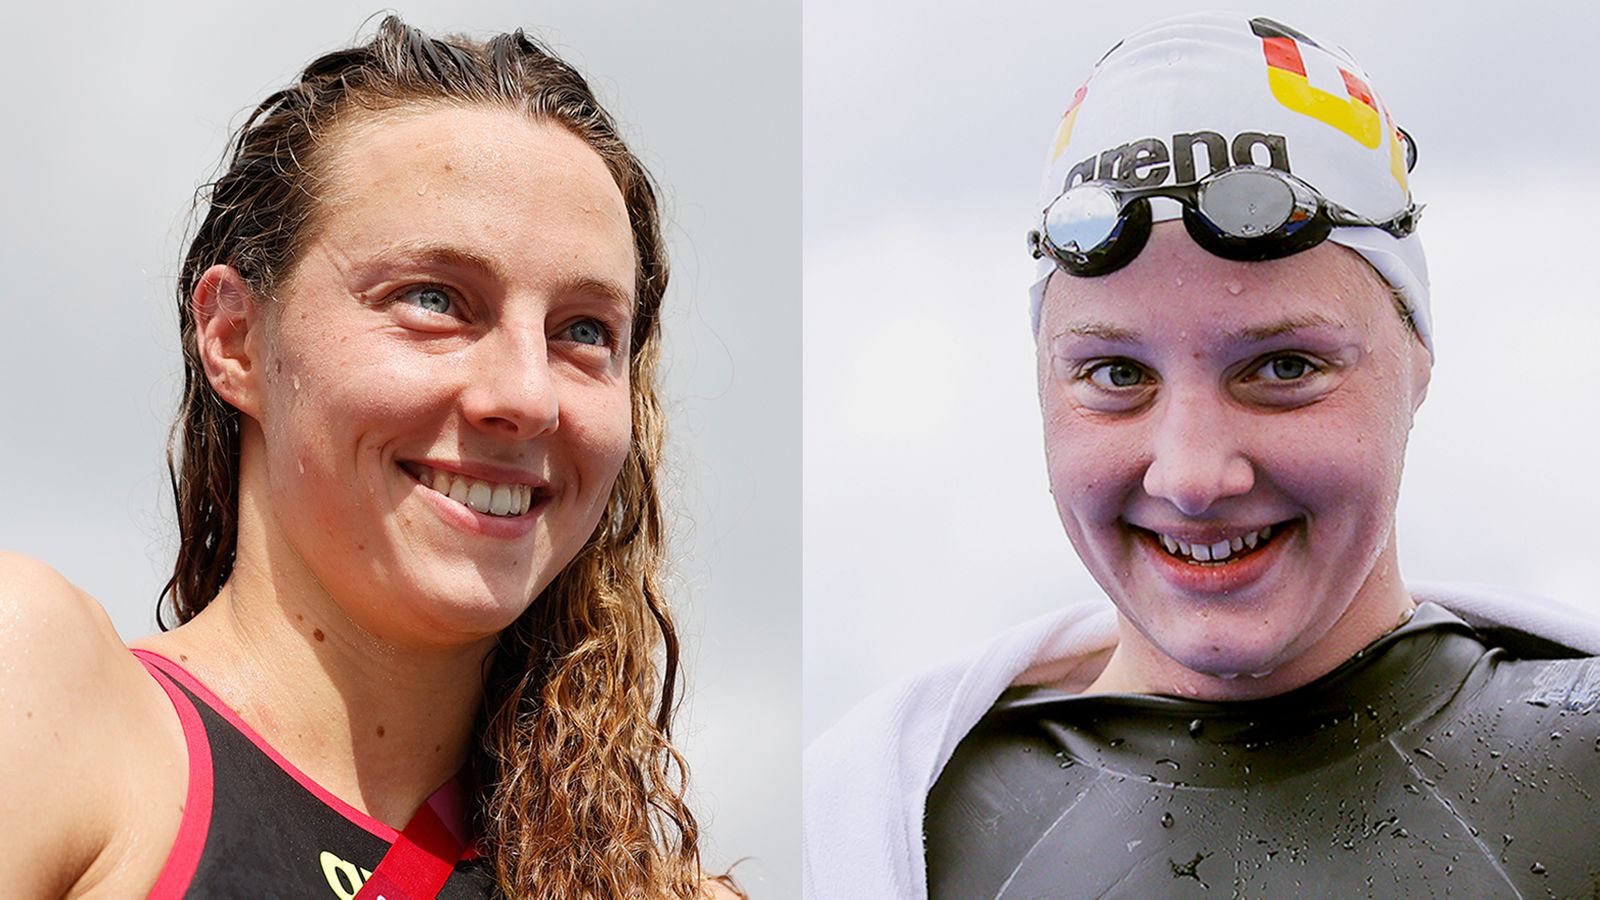 Leonie Beck e Lea Boy di Würzburg ai campionati del mondo di nuoto a Budapest